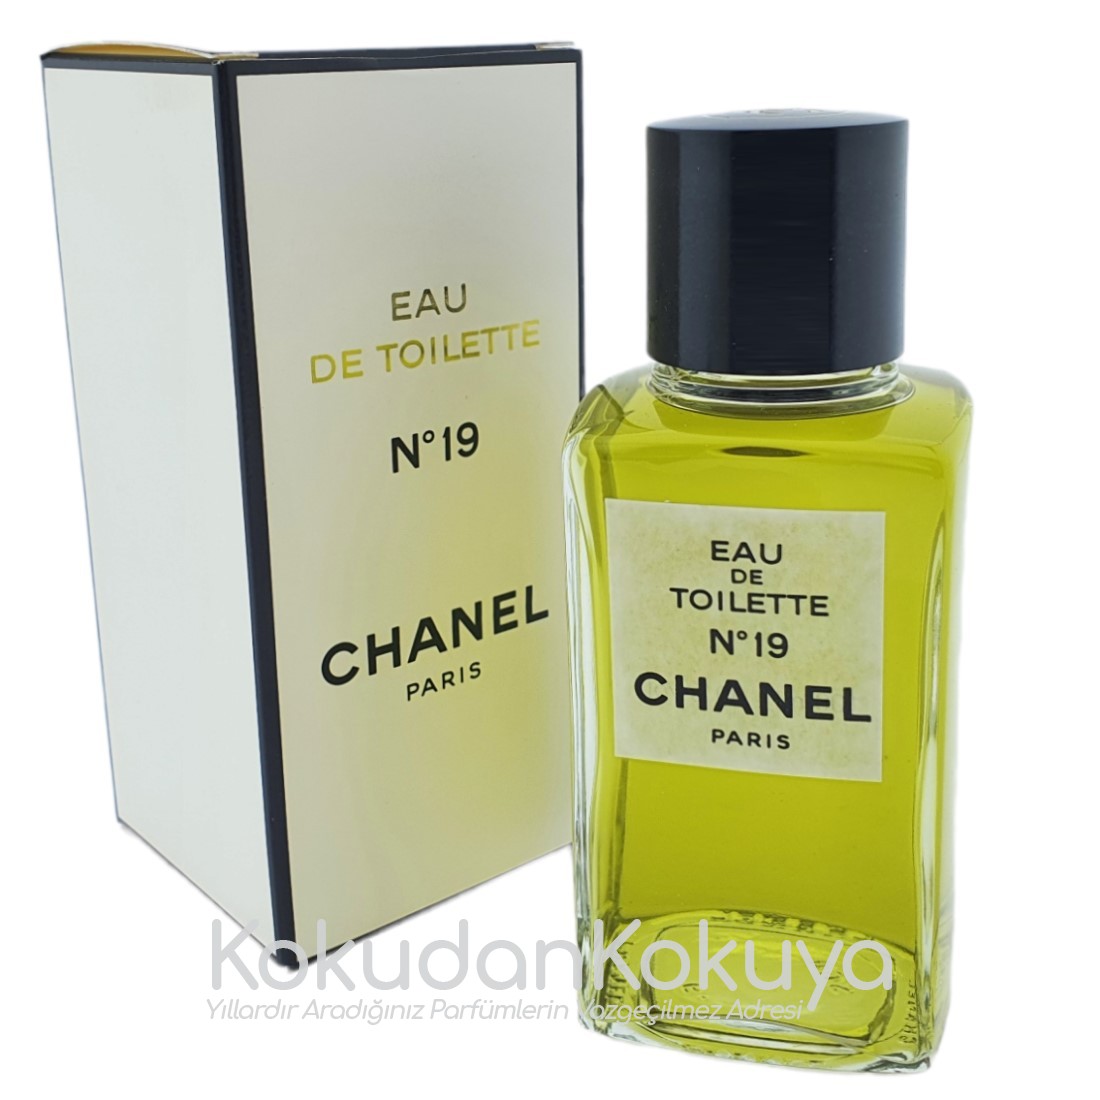 Chanel No 19 Eau De Toilette 50ml Vintage Parfum 1960s Nr19 Etsy 日本 シャネル  50ml